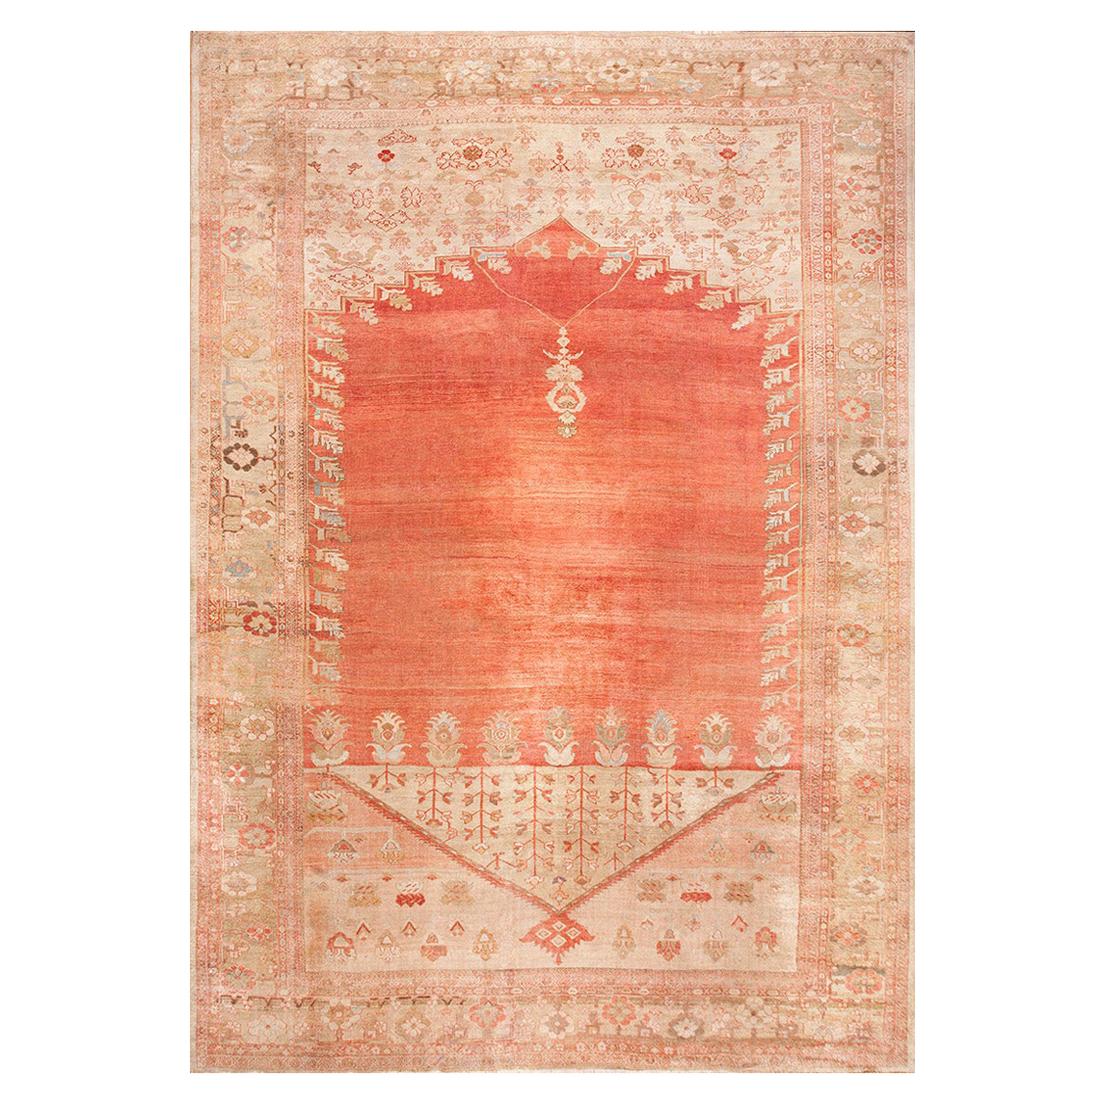 Antique Persian Ziegler Sultanabad Persian Carpet (12'8" x 16'6' - 386 x 502 cm)